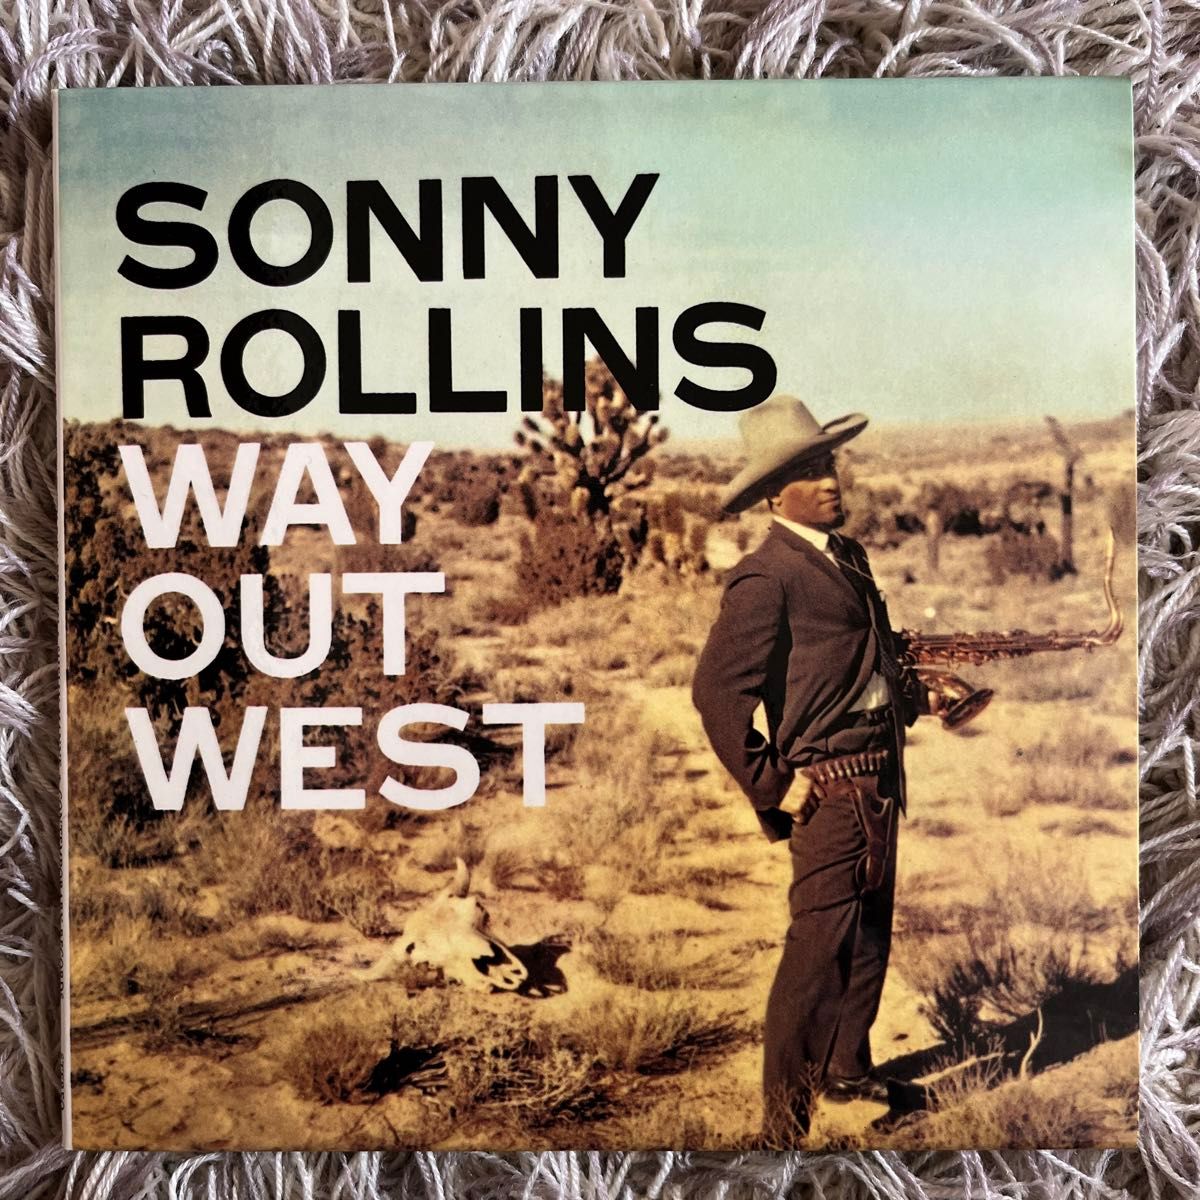 sonny rollins  way out west  ソニー・ロリンズウェイ・アウト・ウエスト　国内盤CD 紙ジャケット貴重盤